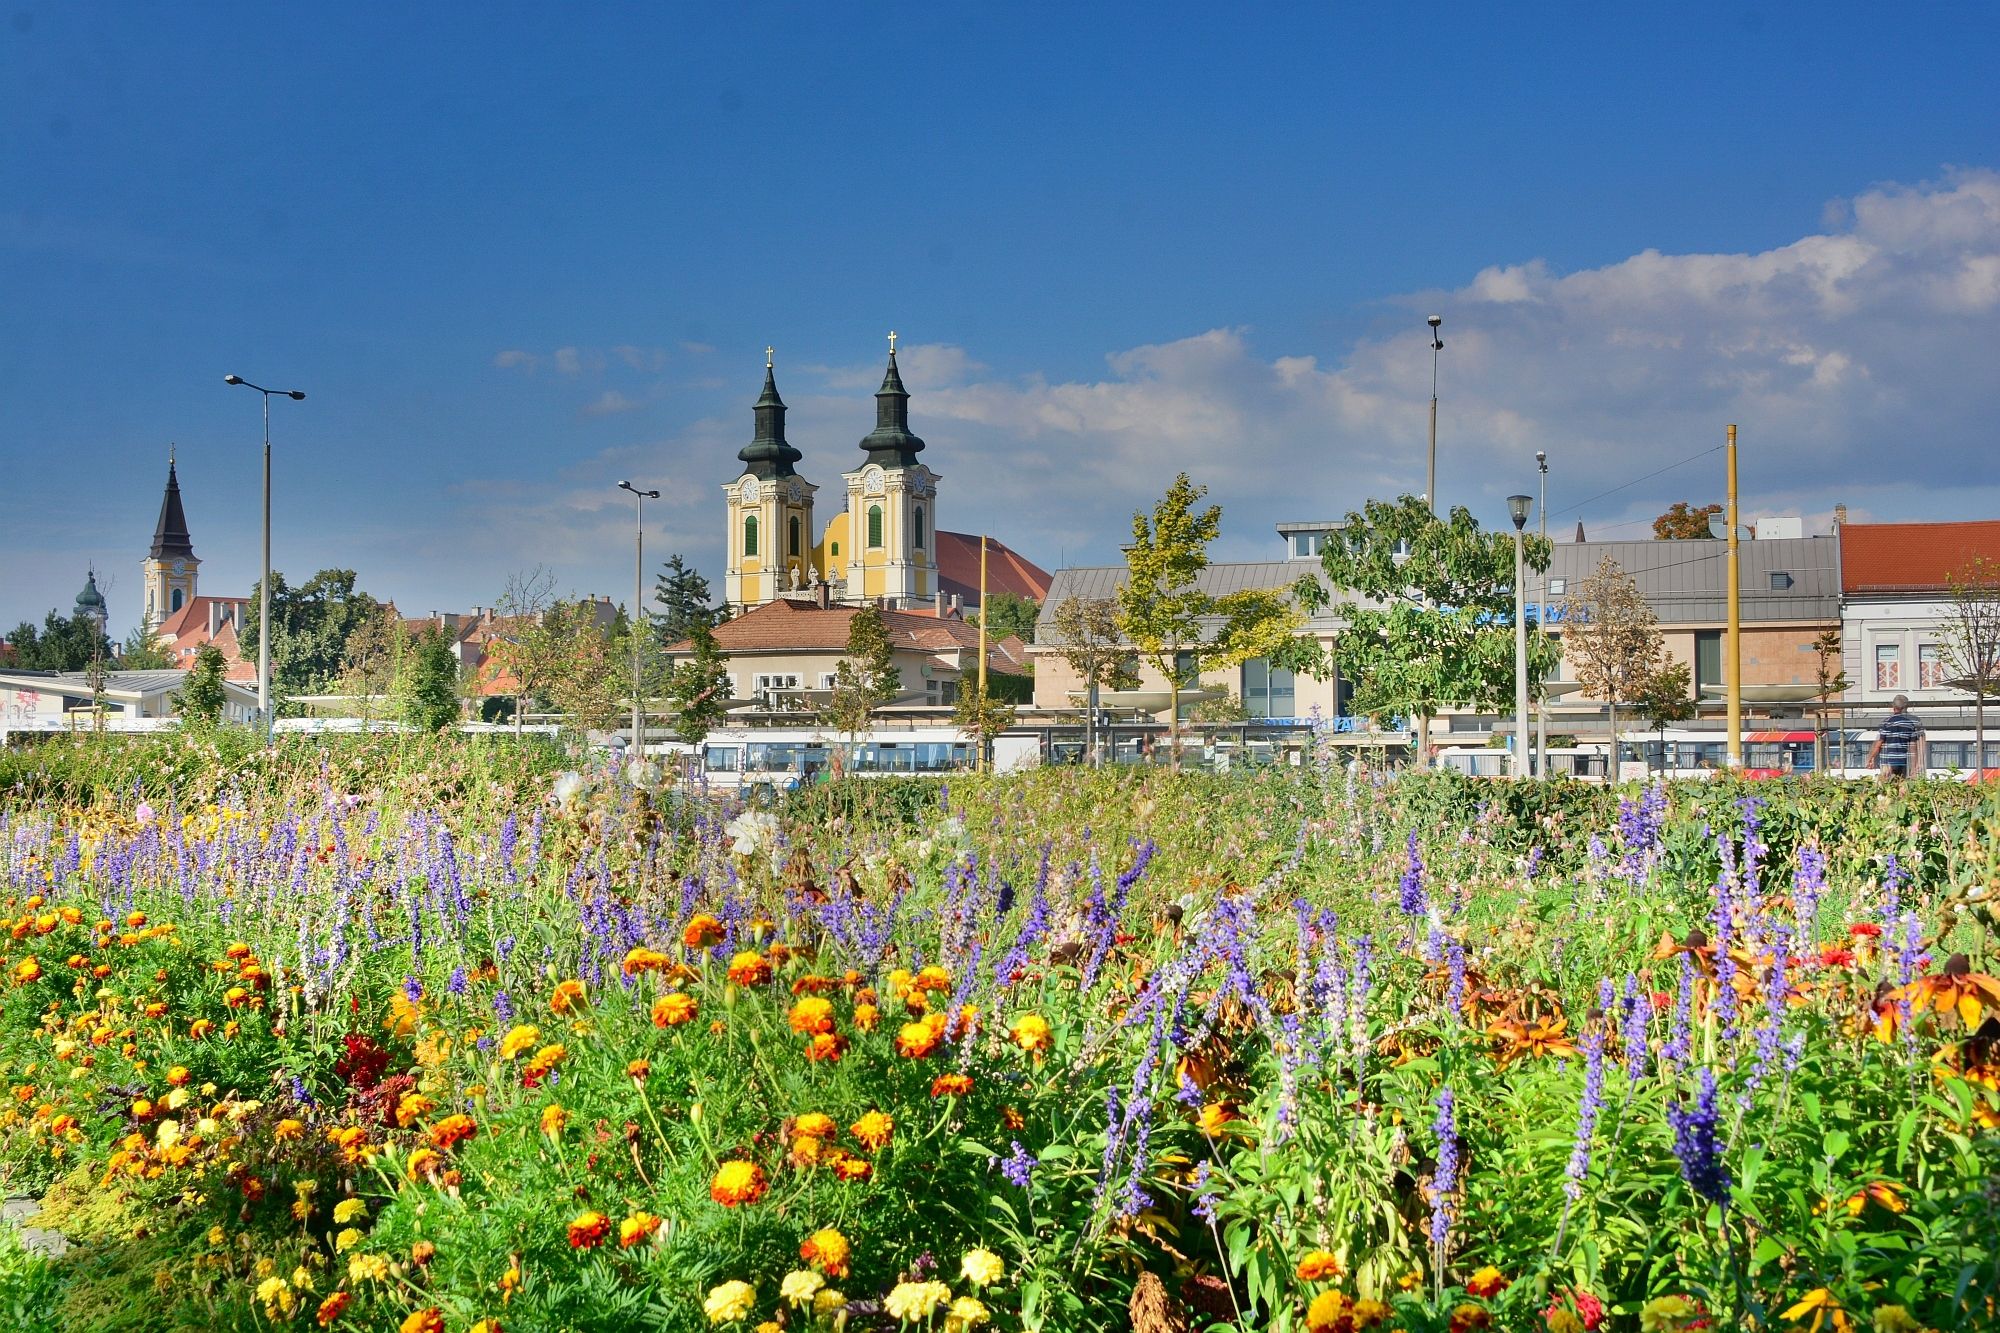 Jövő héten kedden érkezik Fehérvárra az Entetne Florale verseny zsűrije